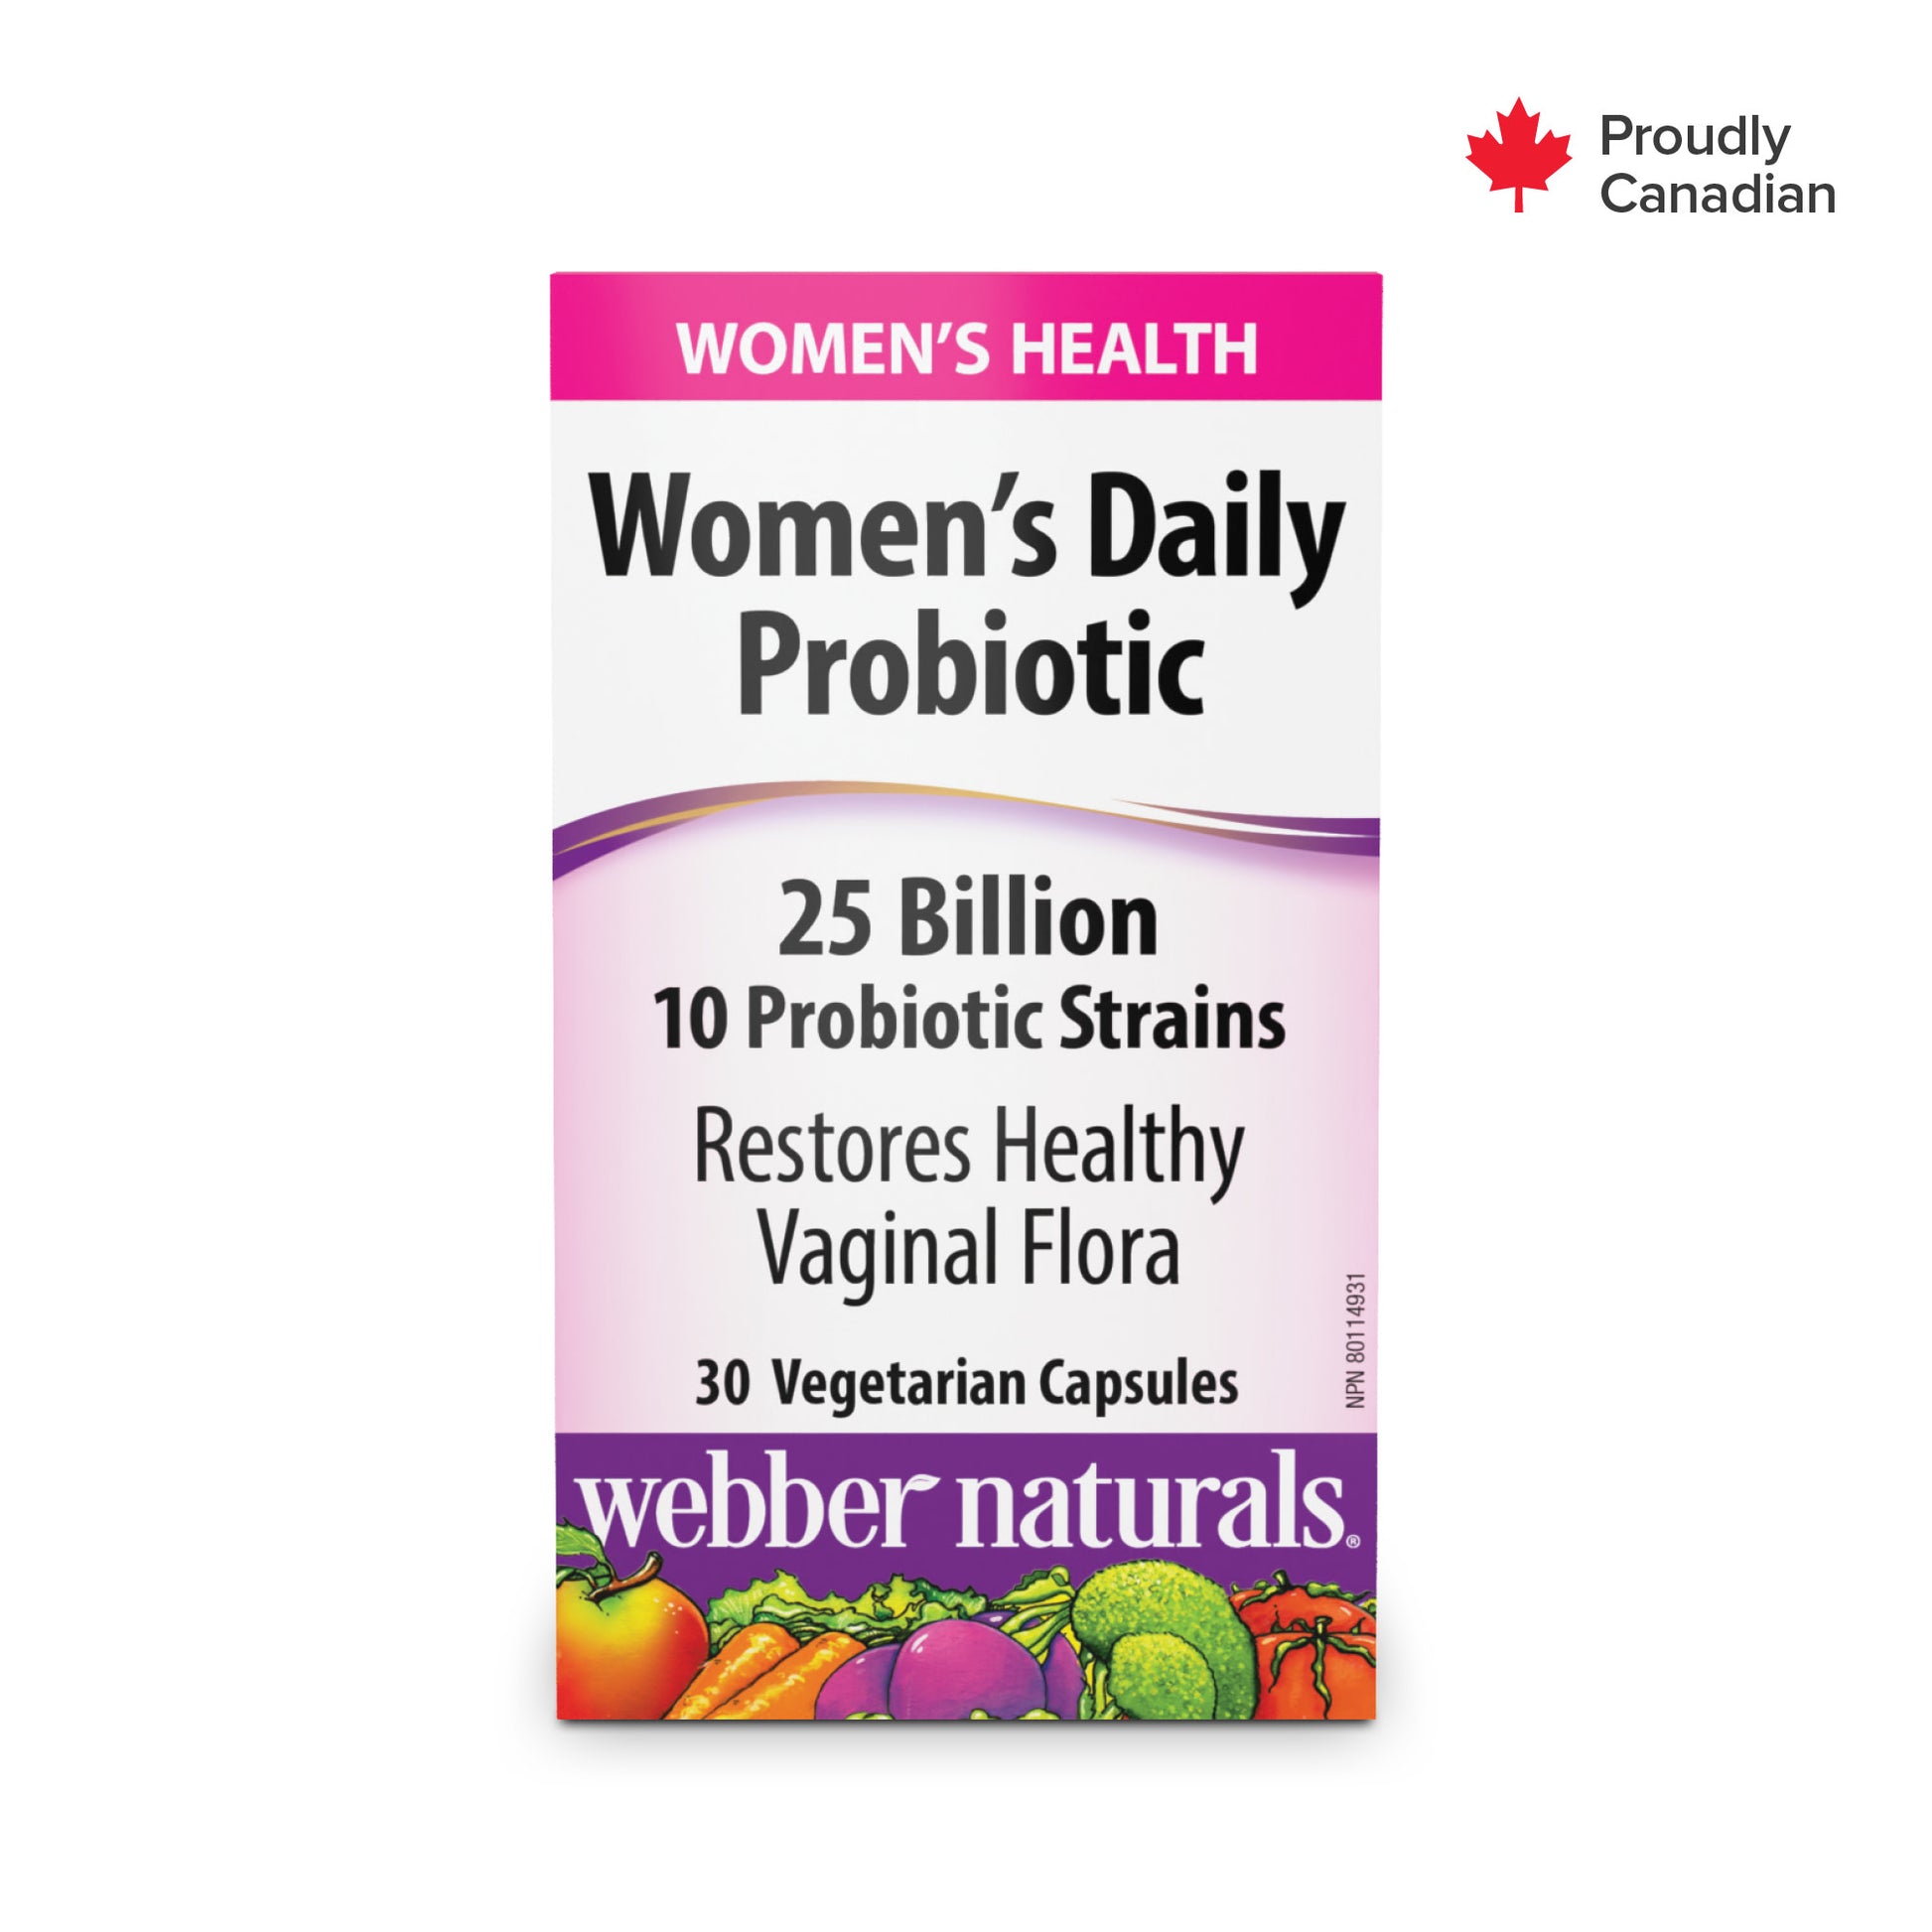 Women’s Daily Probiotic 25 Billion for Webber Naturals|v|hi-res|WN3901